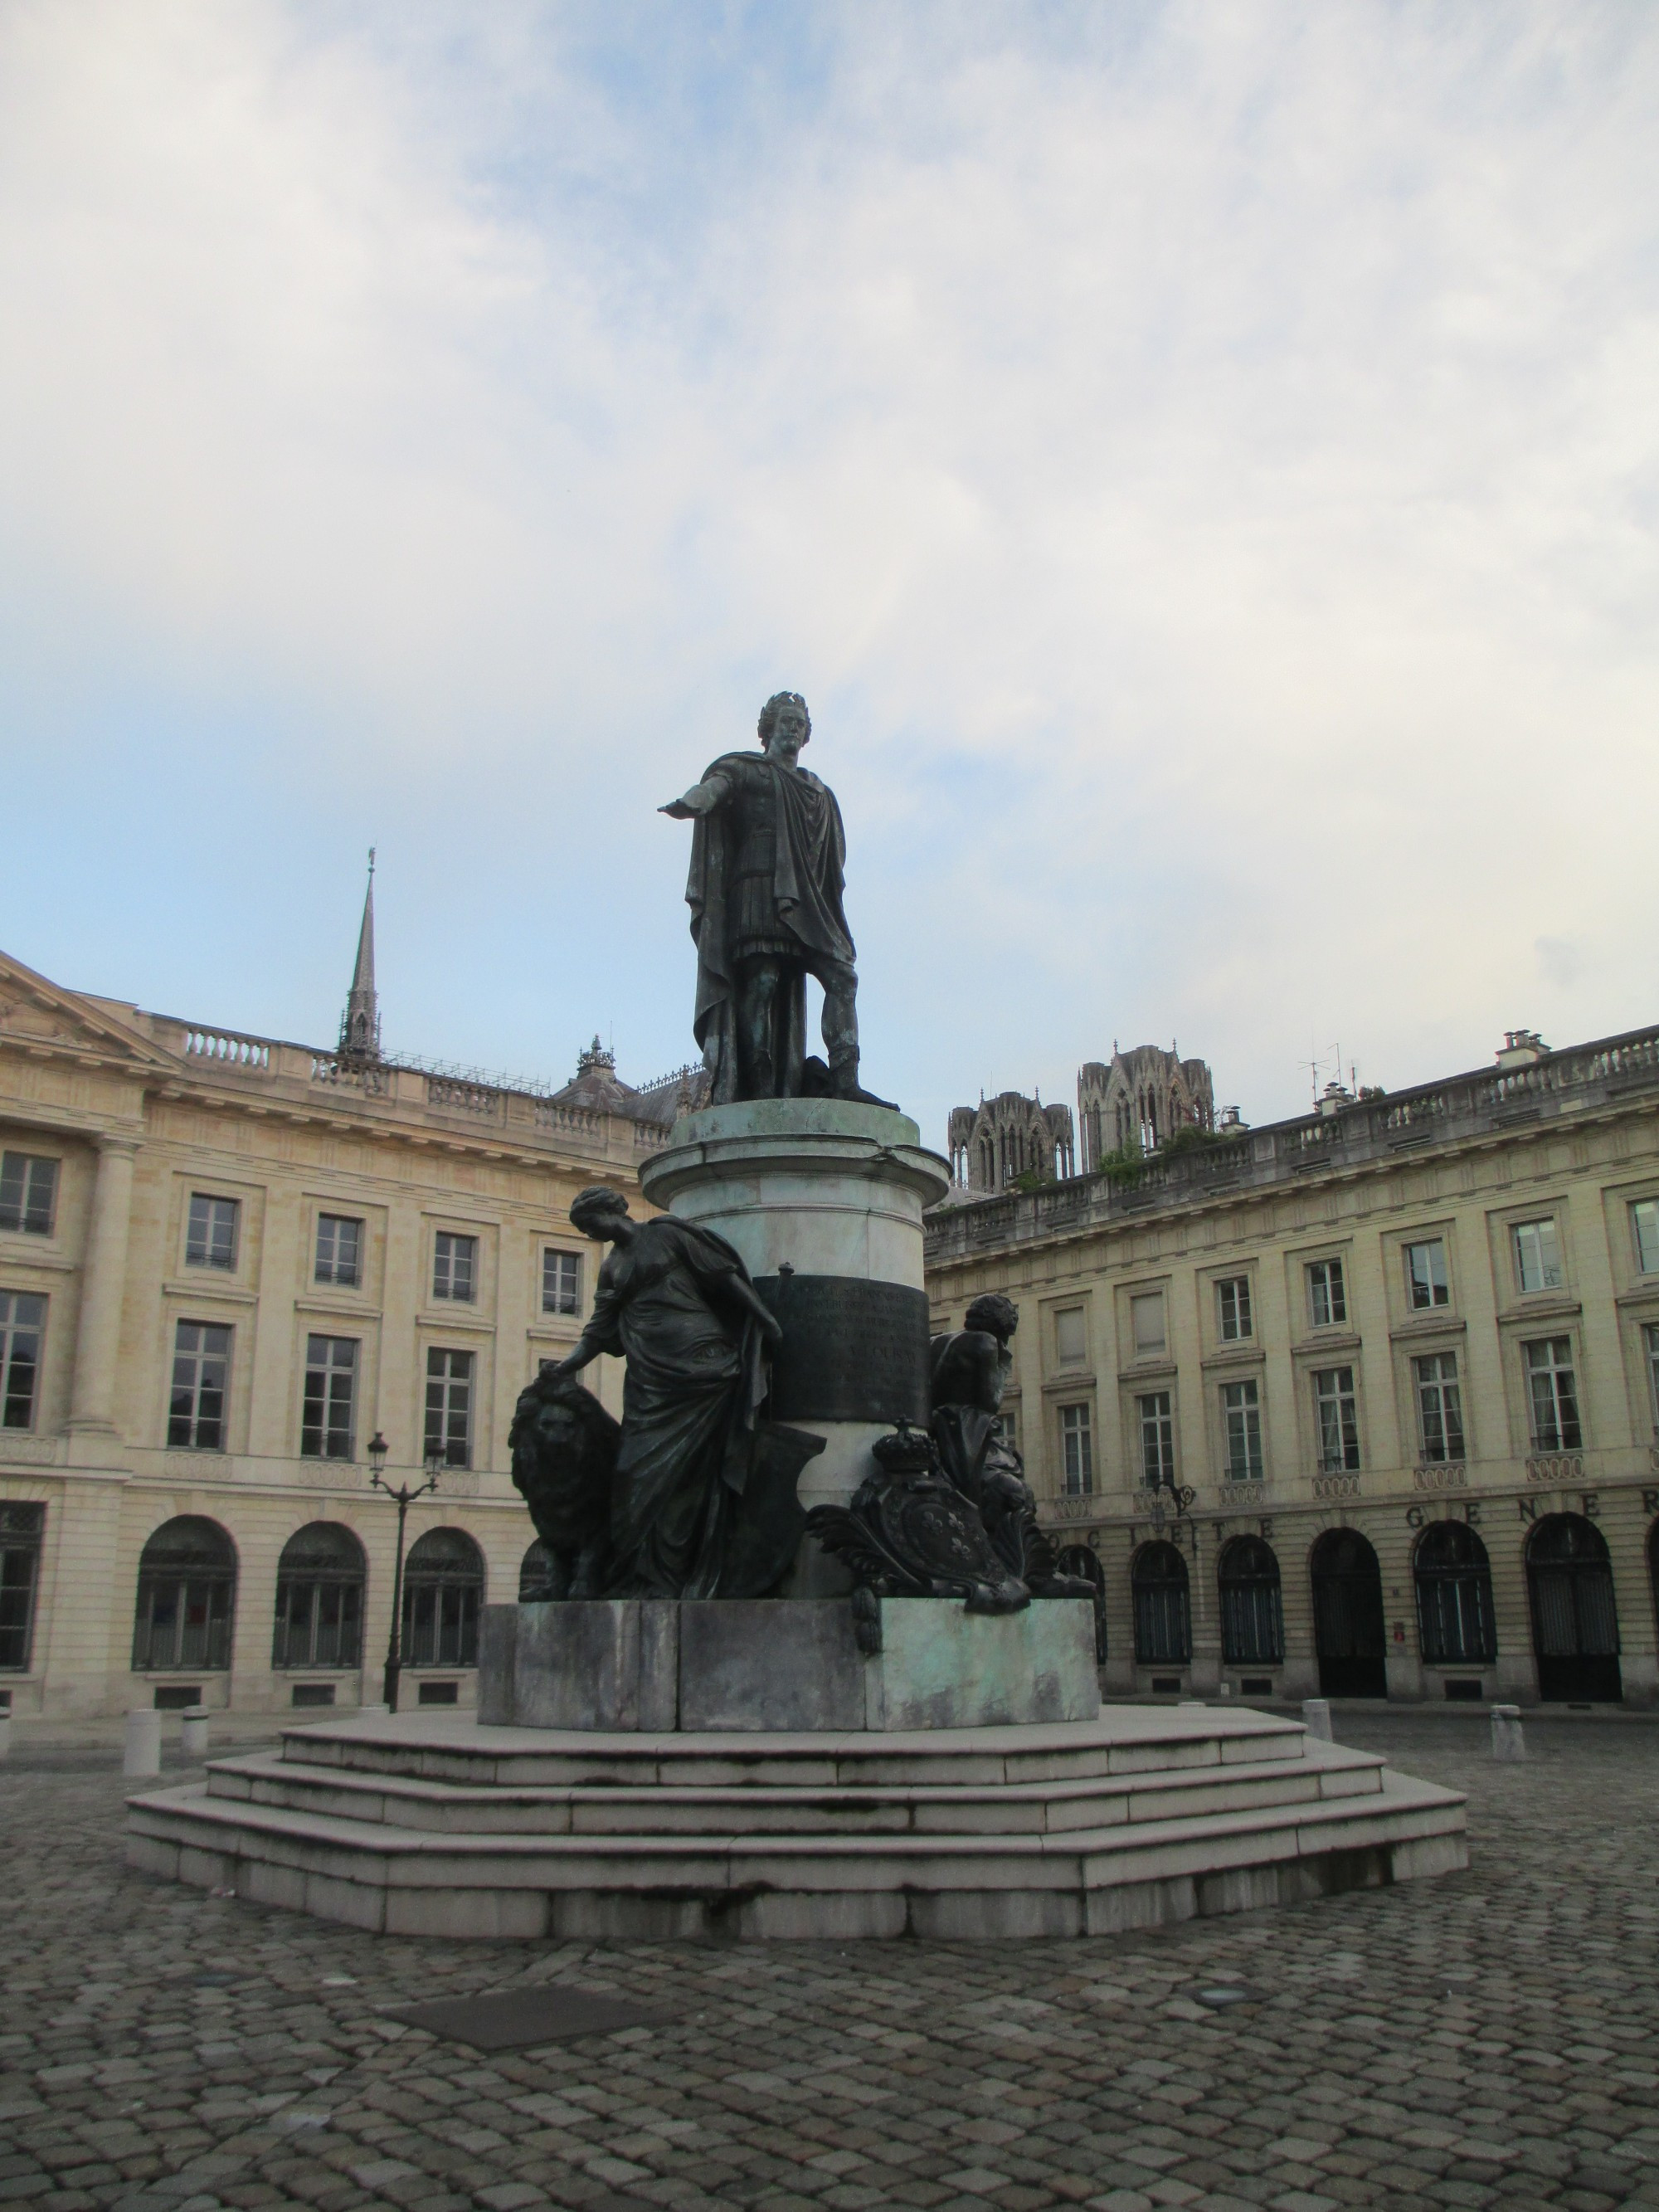 Реймс. Королевская площадь. Памятник Людовику XV. (15.06.2016)